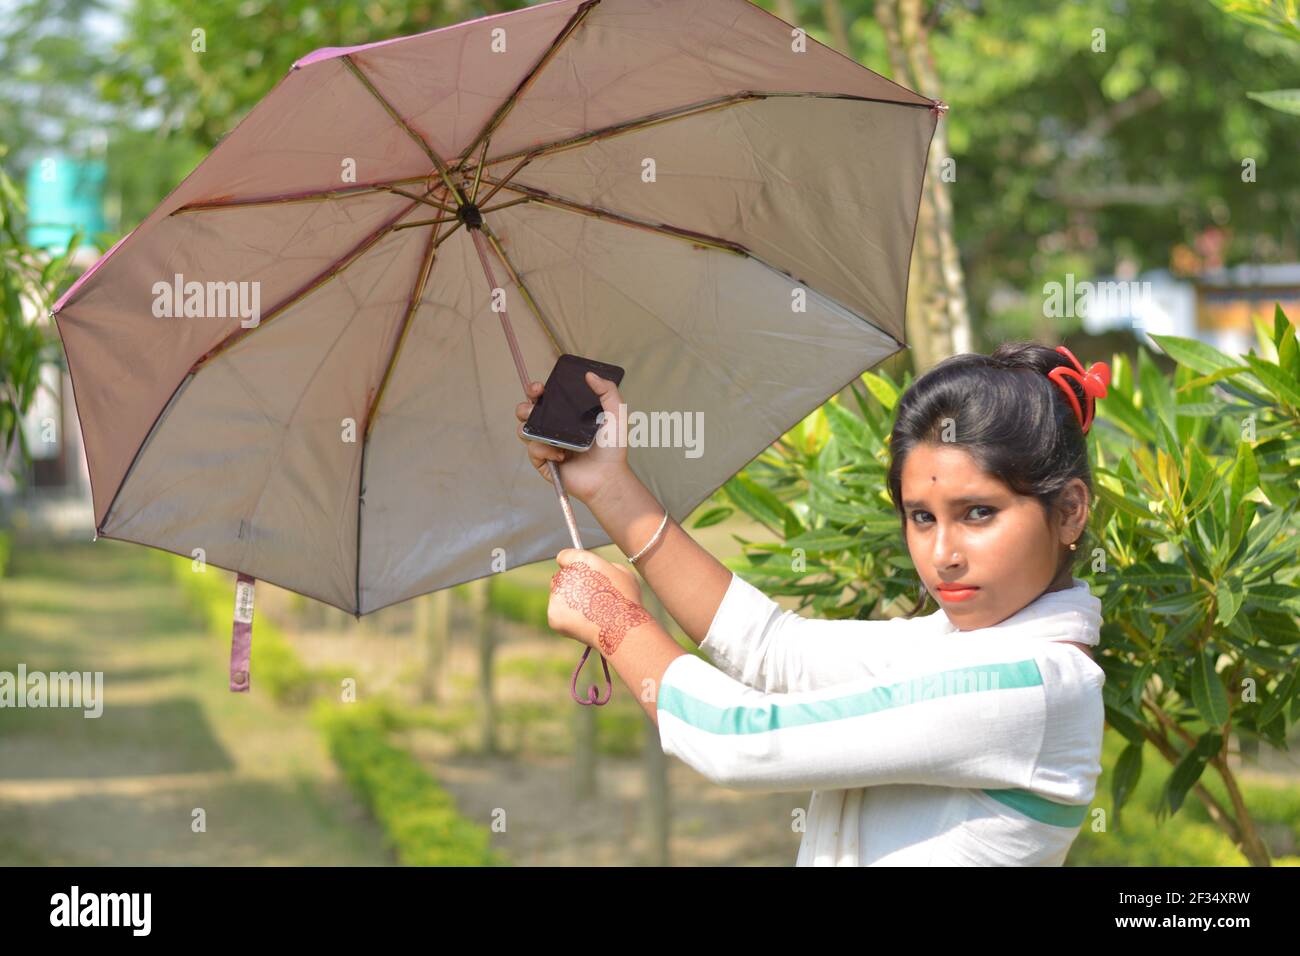 Indiano Bengalese adolescente ragazza cotone bianco indossando salwar kameez e dhupatta aprendo un ombrello, messa a fuoco selettiva Foto Stock